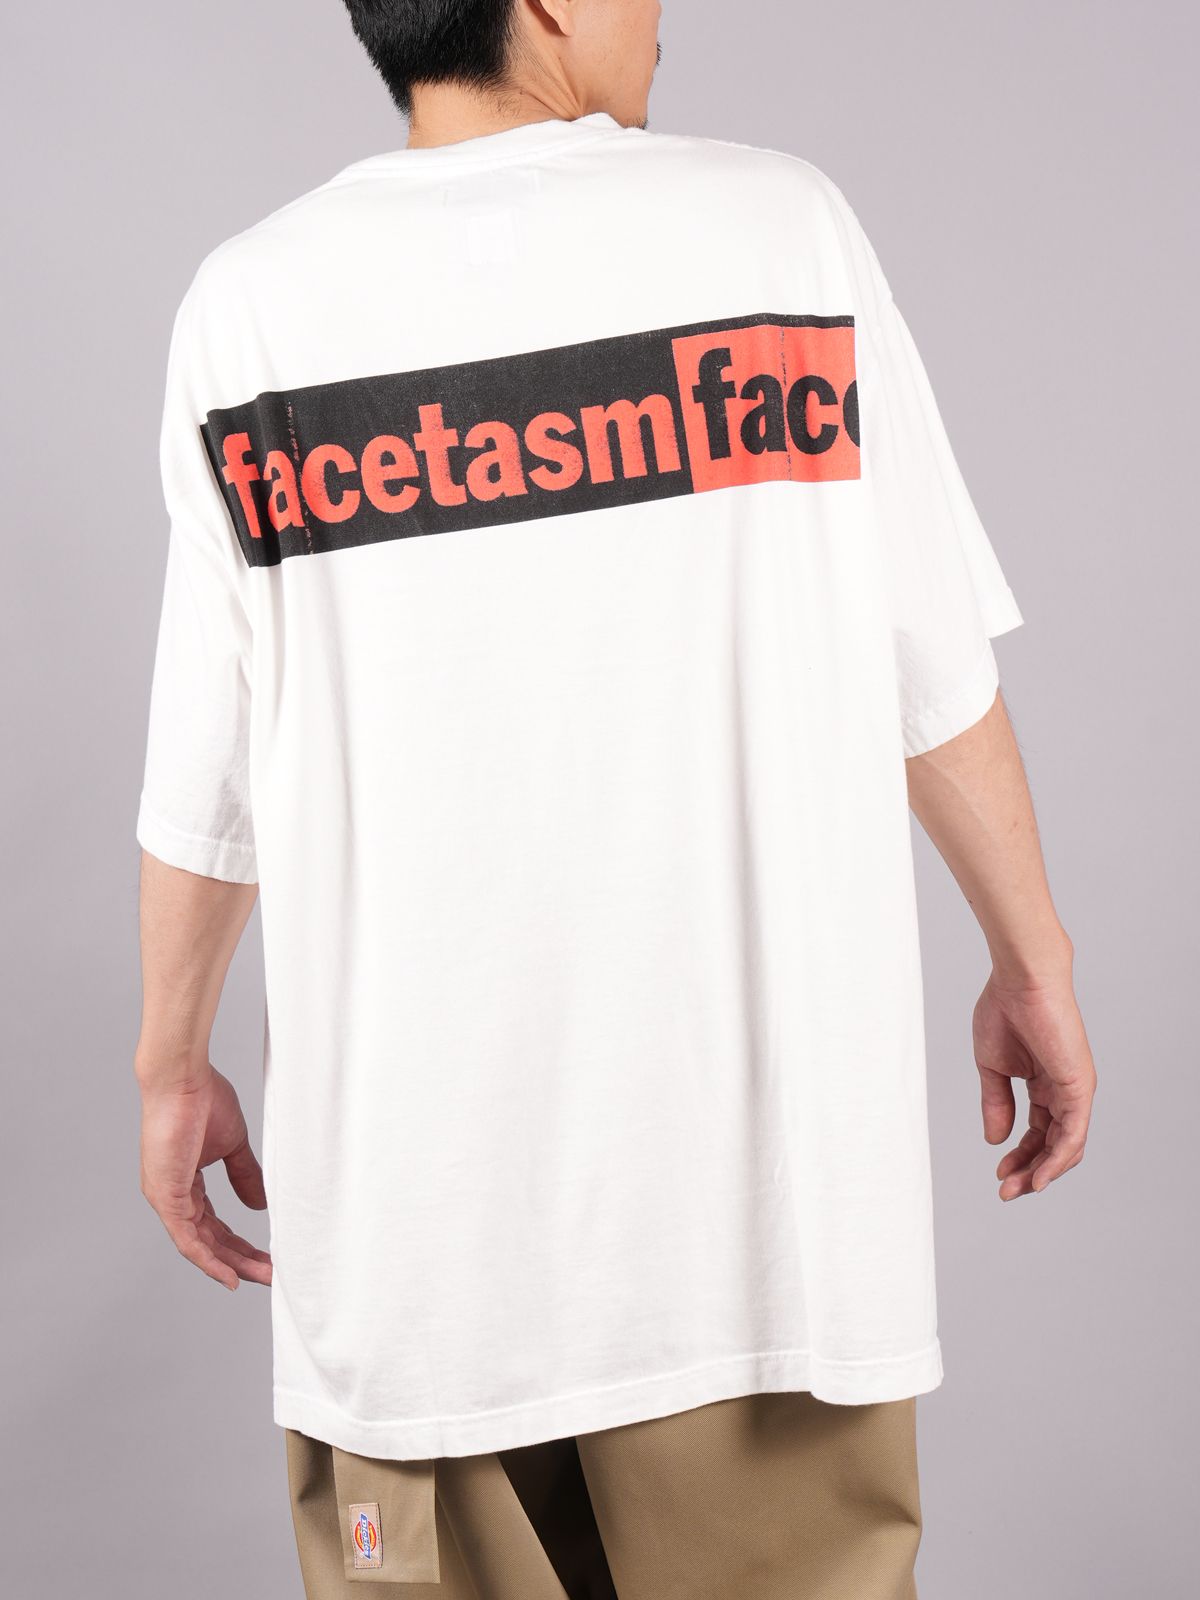 63cm着丈ファセッタズム FACETASM Tシャツ カットソー ロゴ バックプリント